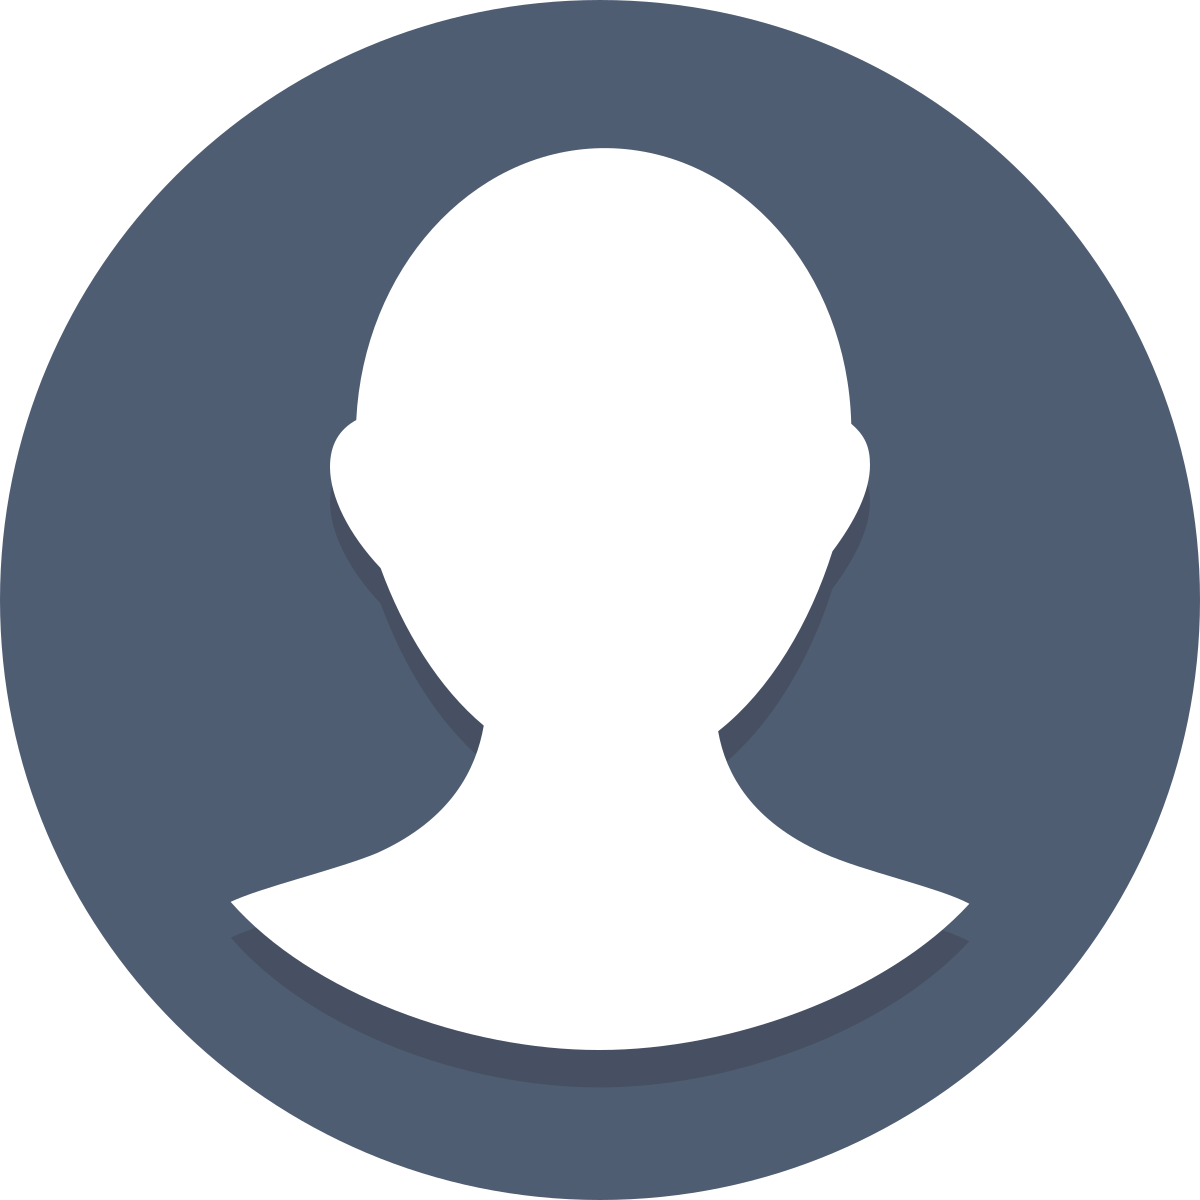 Аватарки user. Иконка профиля. Значок аватара. Круглый аватар. Изображение пользователя.